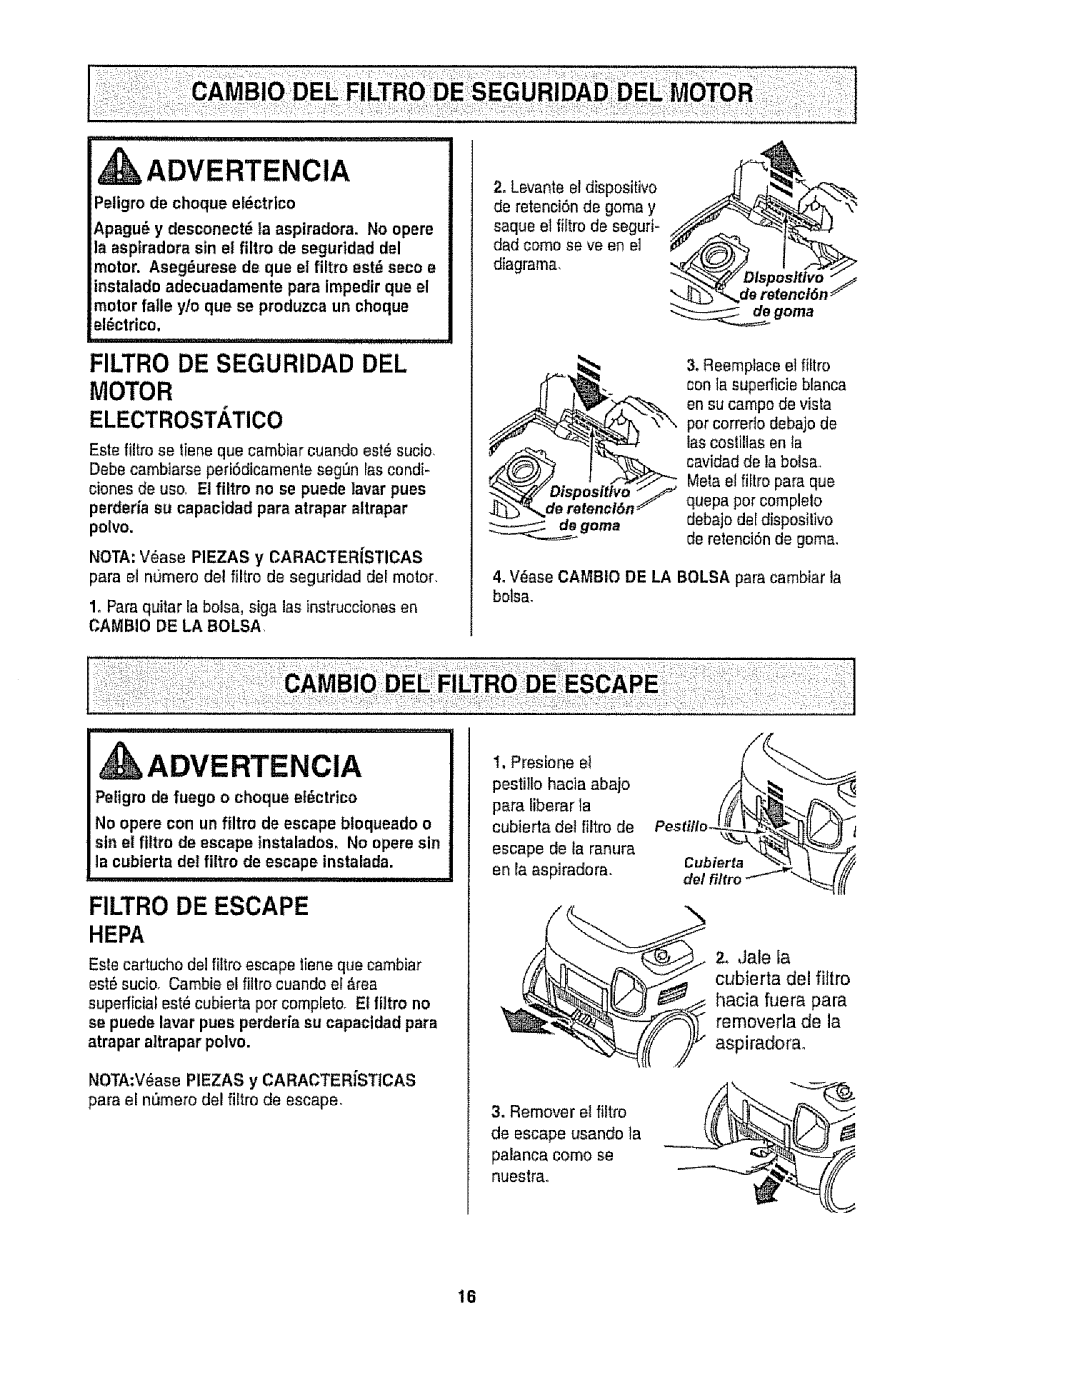 Kenmore 116.28015, 116.28014 owner manual Advertencia, Filtro De Seguridad Del Motor Electrostatico, Filtro De Escape, Hepa 